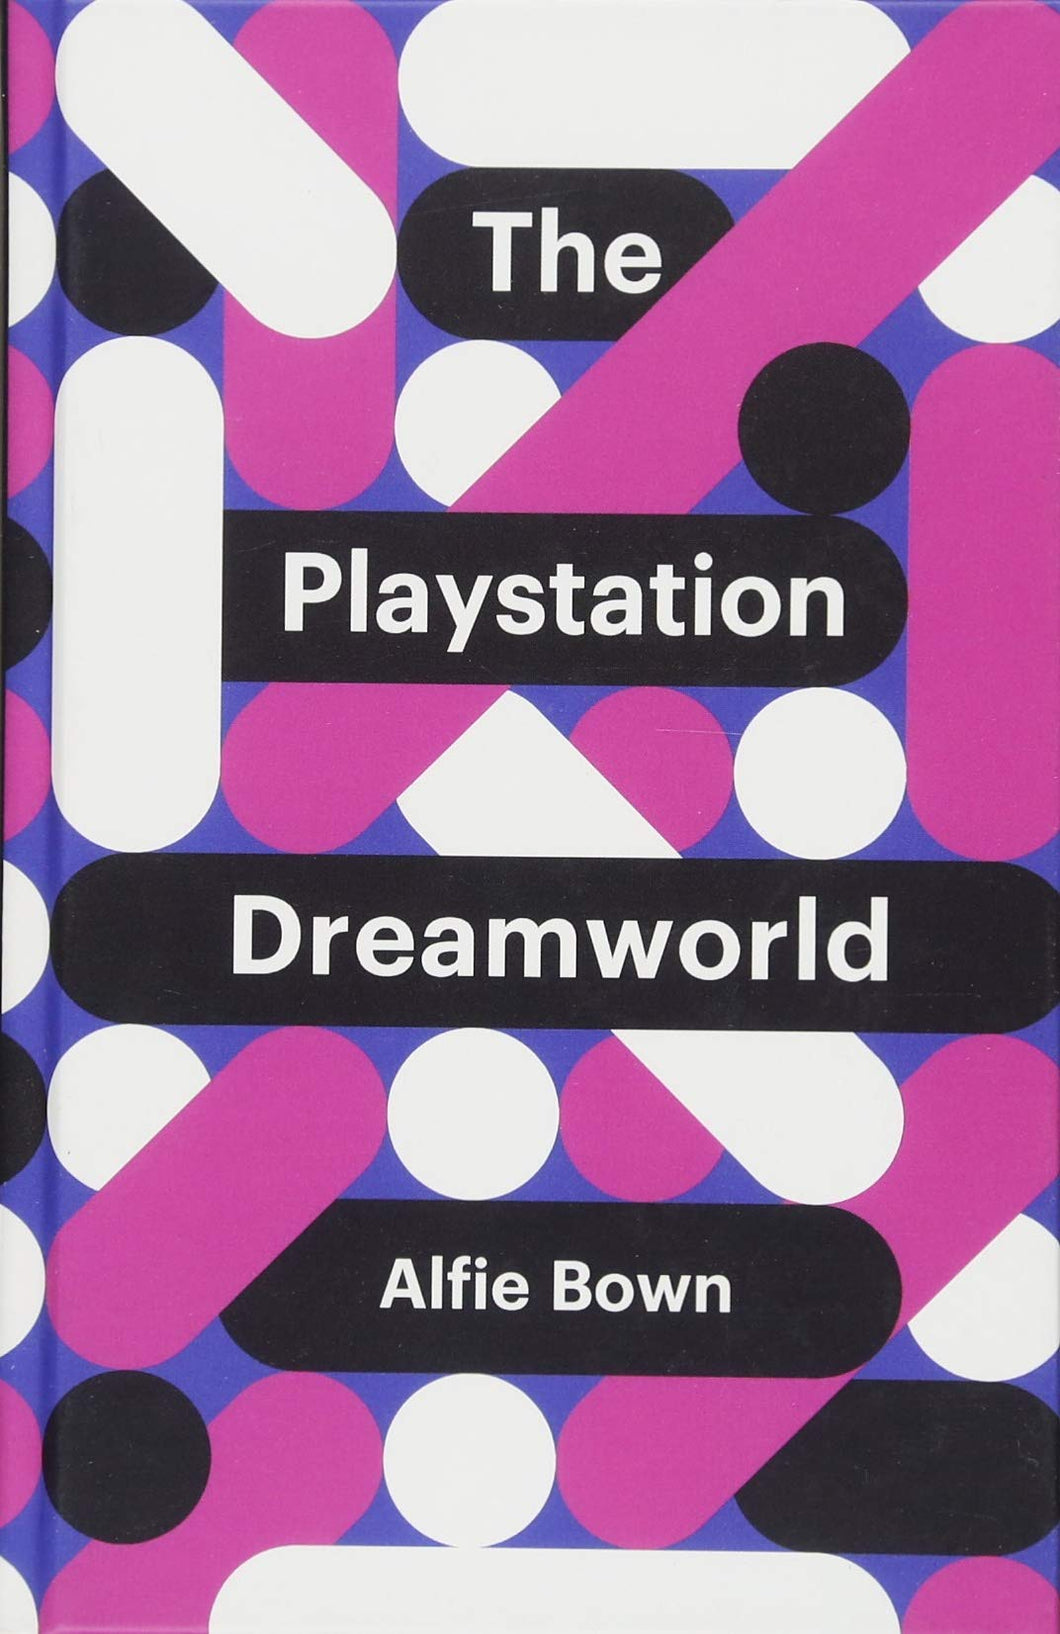 The PlayStation Dreamworld ร้านหนังสือและสิ่งของ เป็นร้านหนังสือภาษาอังกฤษหายาก และร้านกาแฟ หรือ บุ๊คคาเฟ่ ตั้งอยู่สุขุมวิท กรุงเทพ